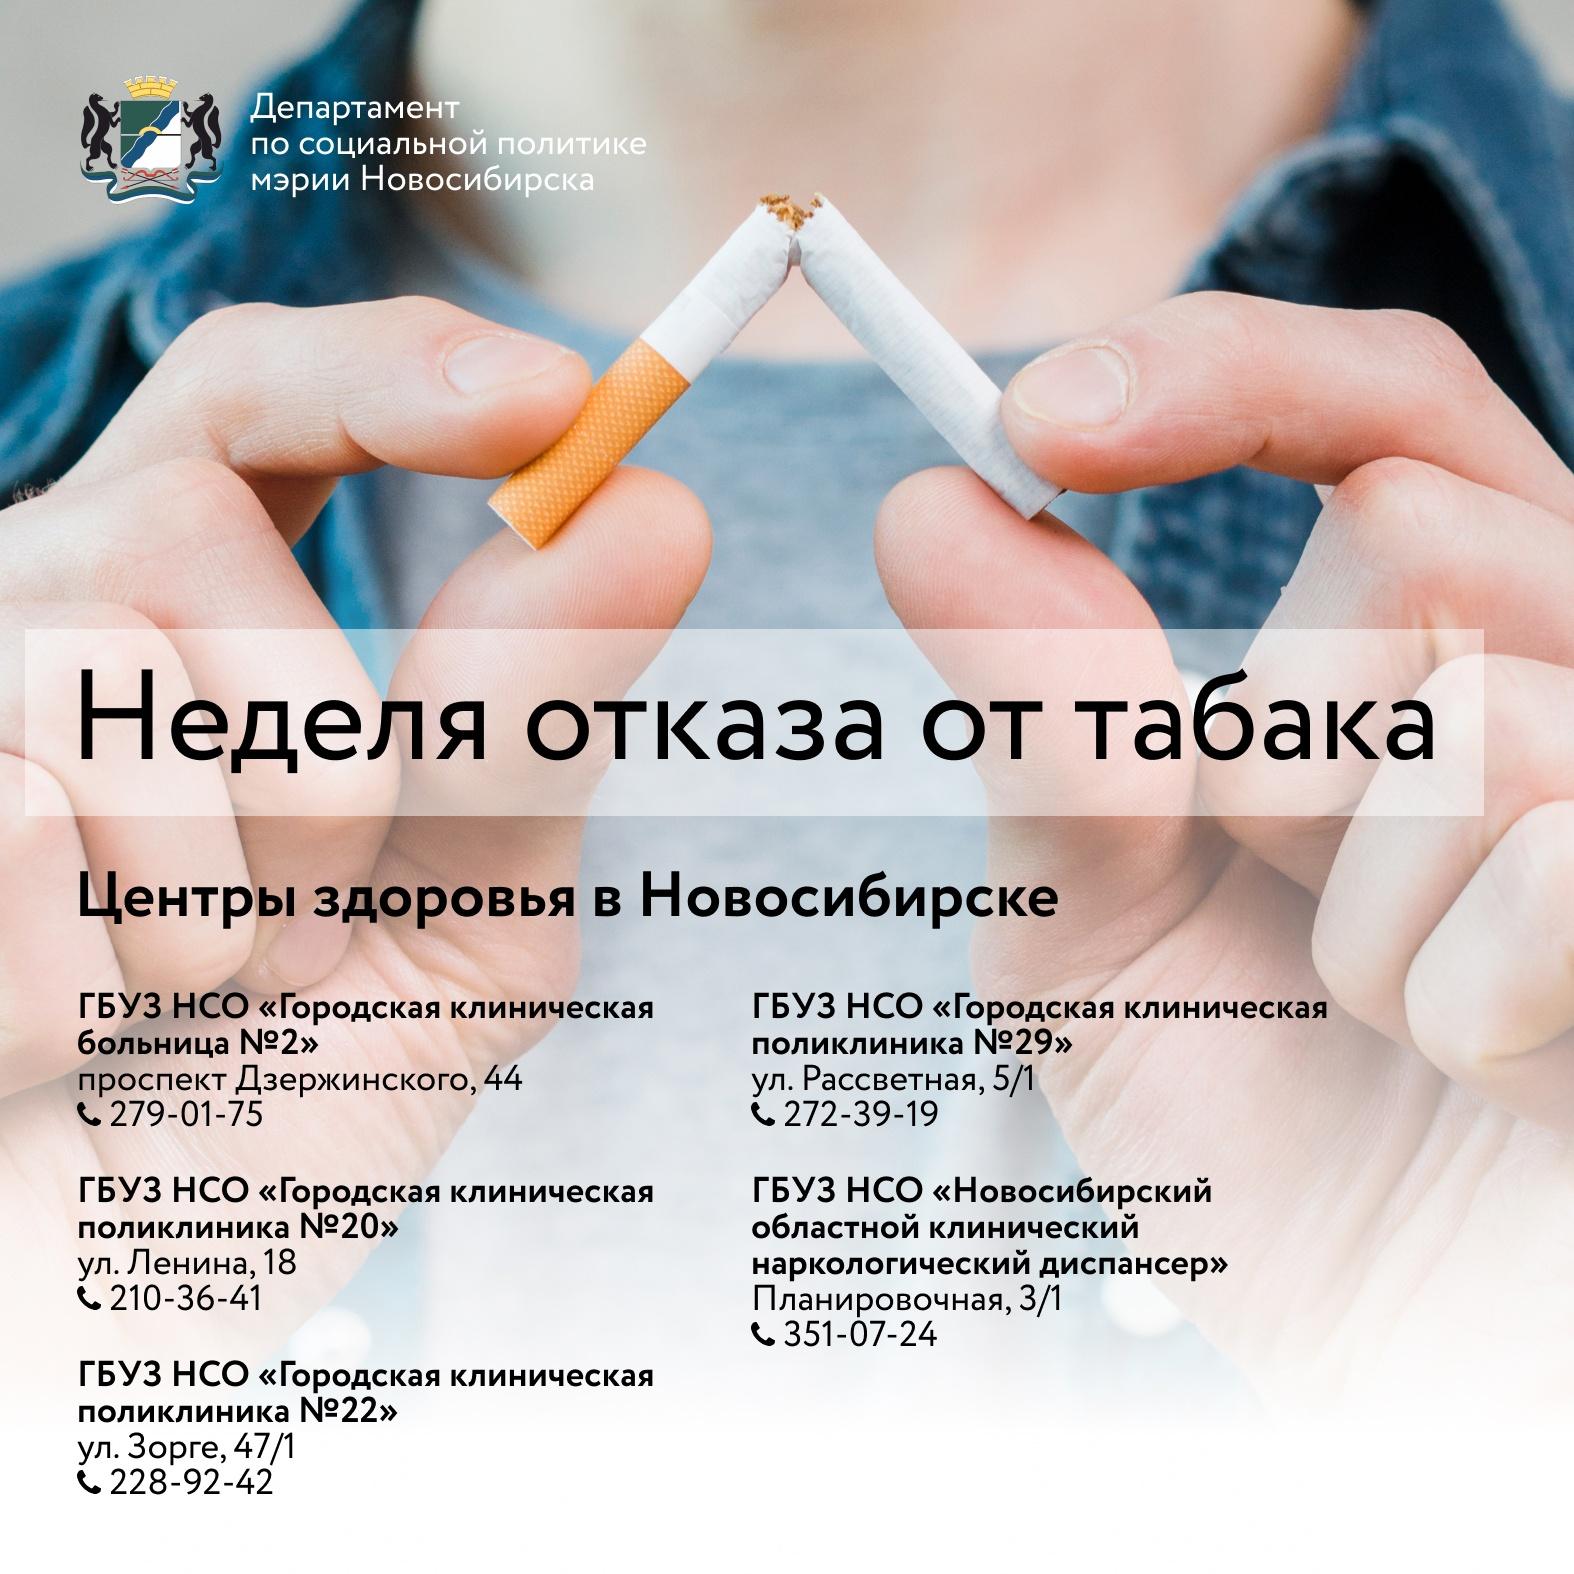 Фото Бросить легко: неделя отказа от табака в Новосибирске продлится до 4 июня 2